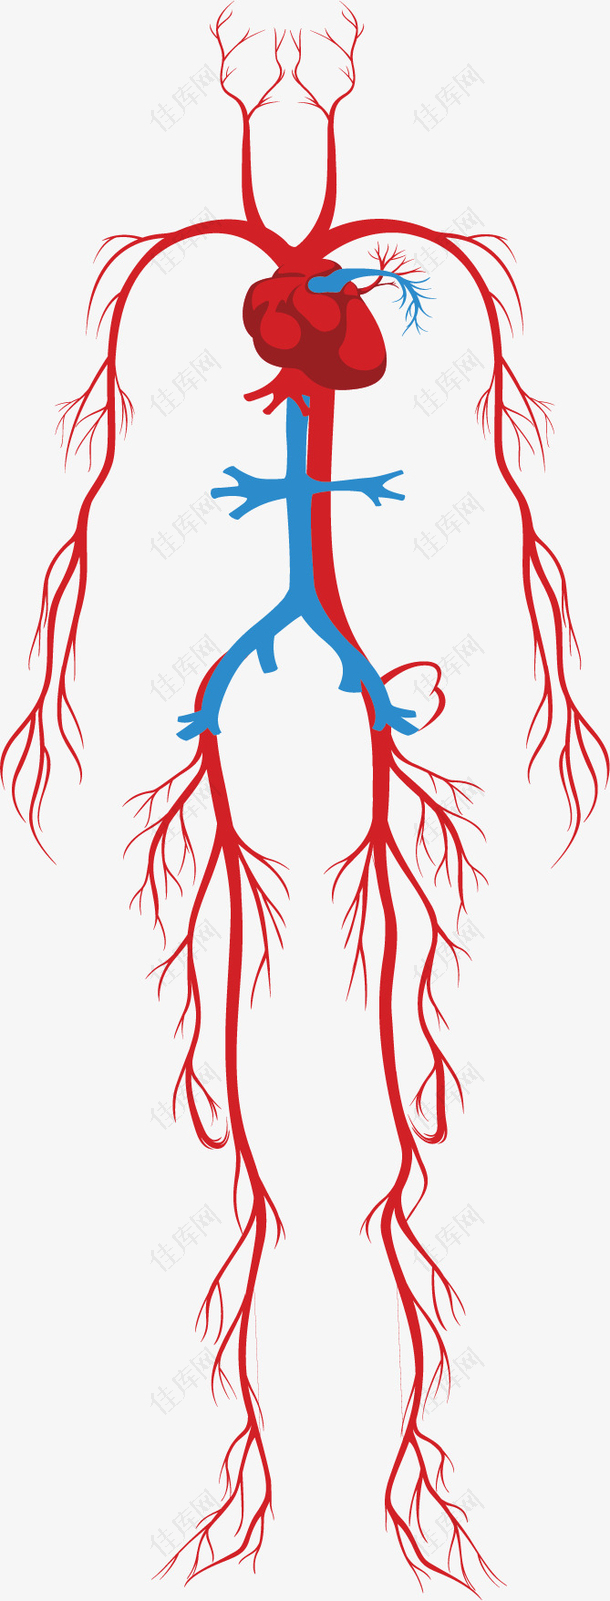 人体系统的颈动脉